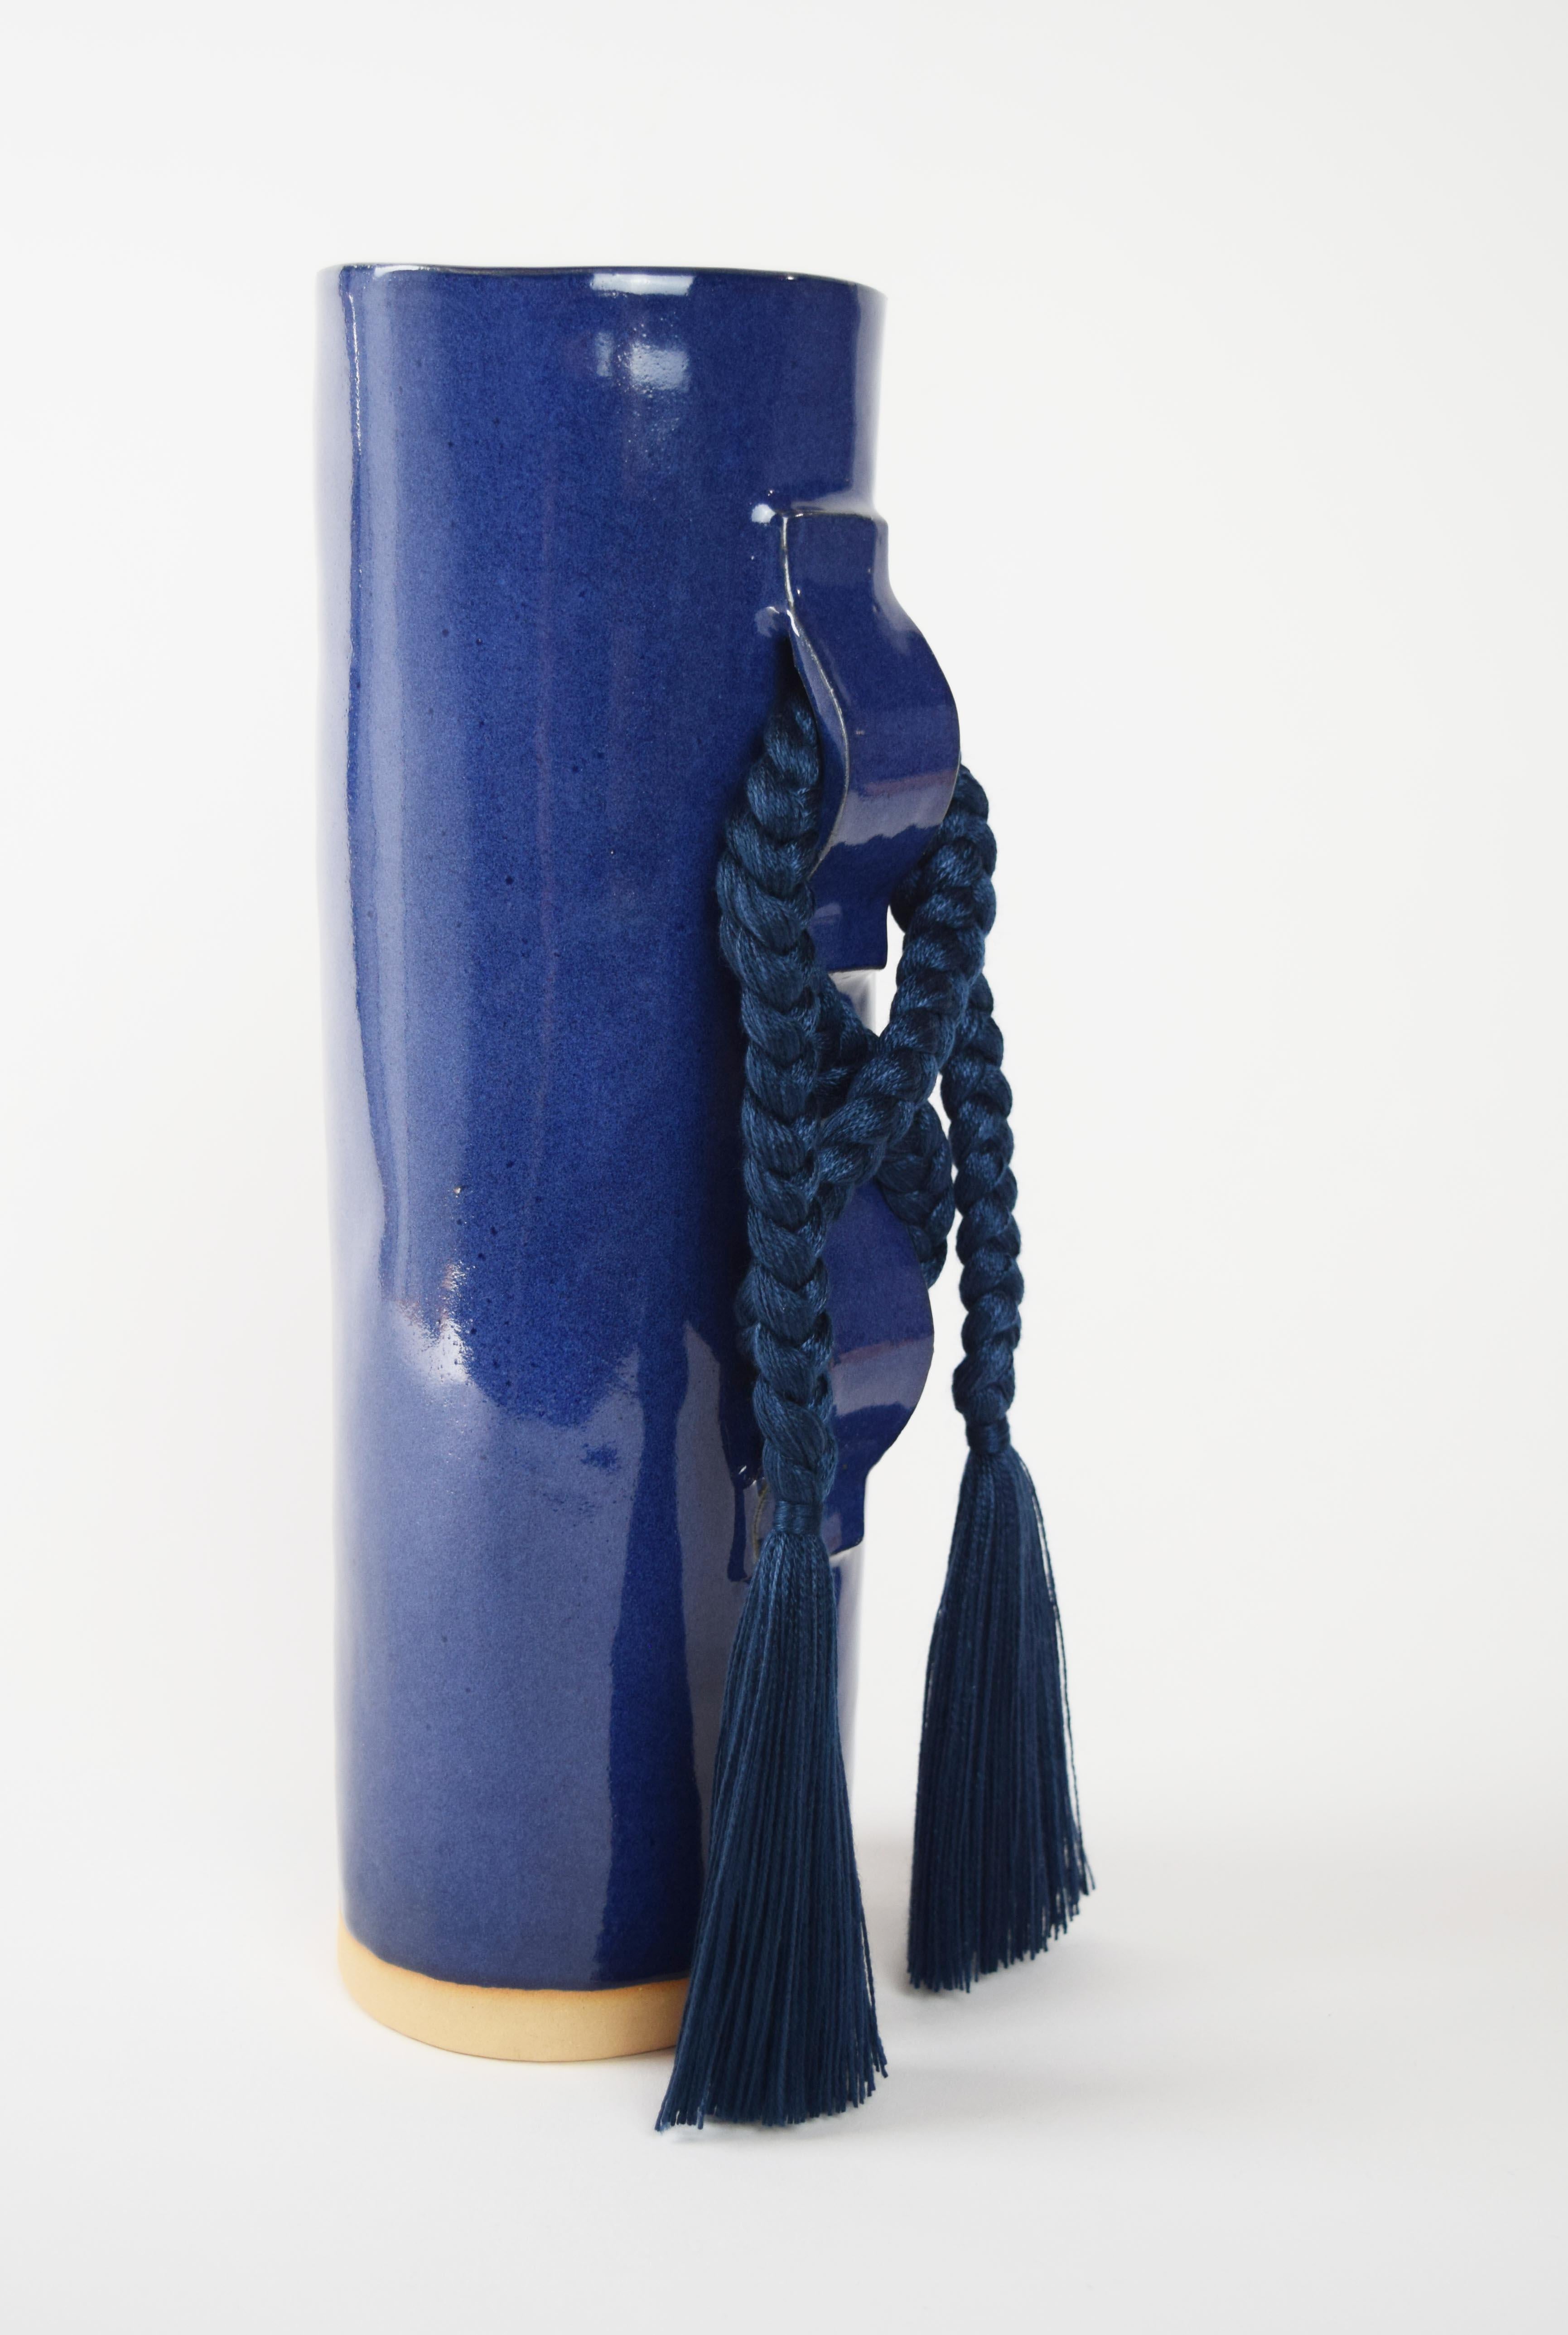 Vase #696 de Karen Gayle Tinney

Doté d'un grand nœud gestuel, ce vase s'inspire des détails tressés des sculptures murales uniques de Karen.

Grès formé à la main avec une glaçure bleu profond. Détails tressés en tencel marine (le tressage est